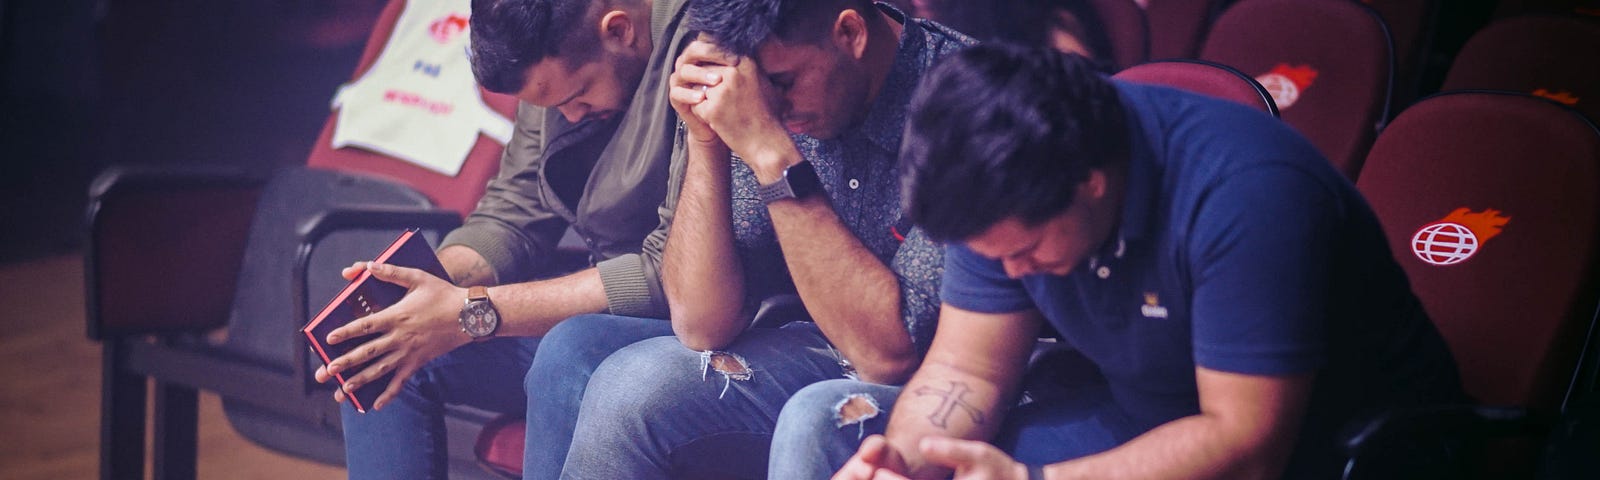 three men sitting and praying